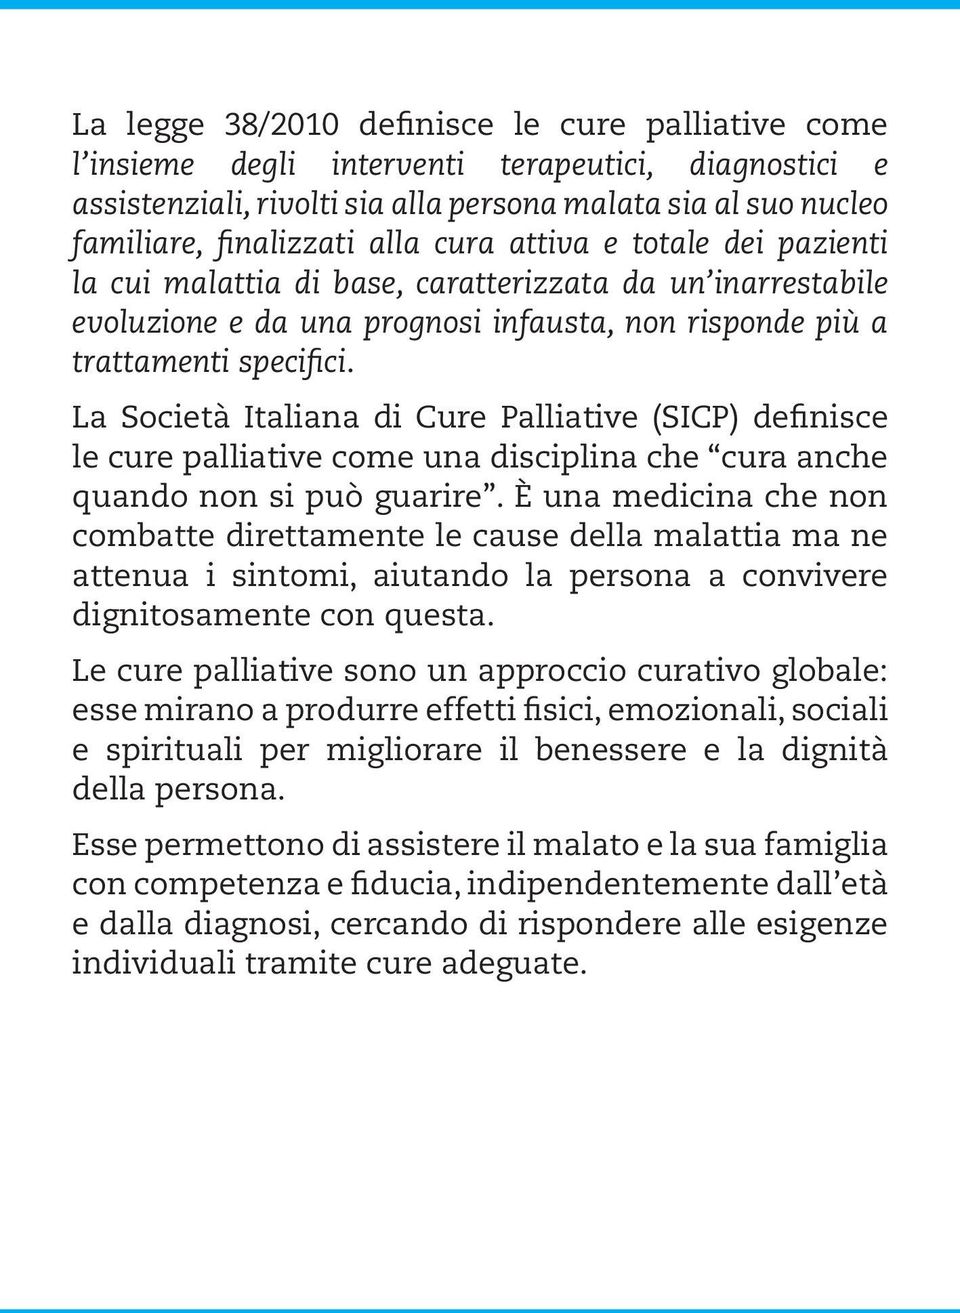 La Società Italiana di Cure Palliative (SICP) definisce le cure palliative come una disciplina che cura anche quando non si può guarire.